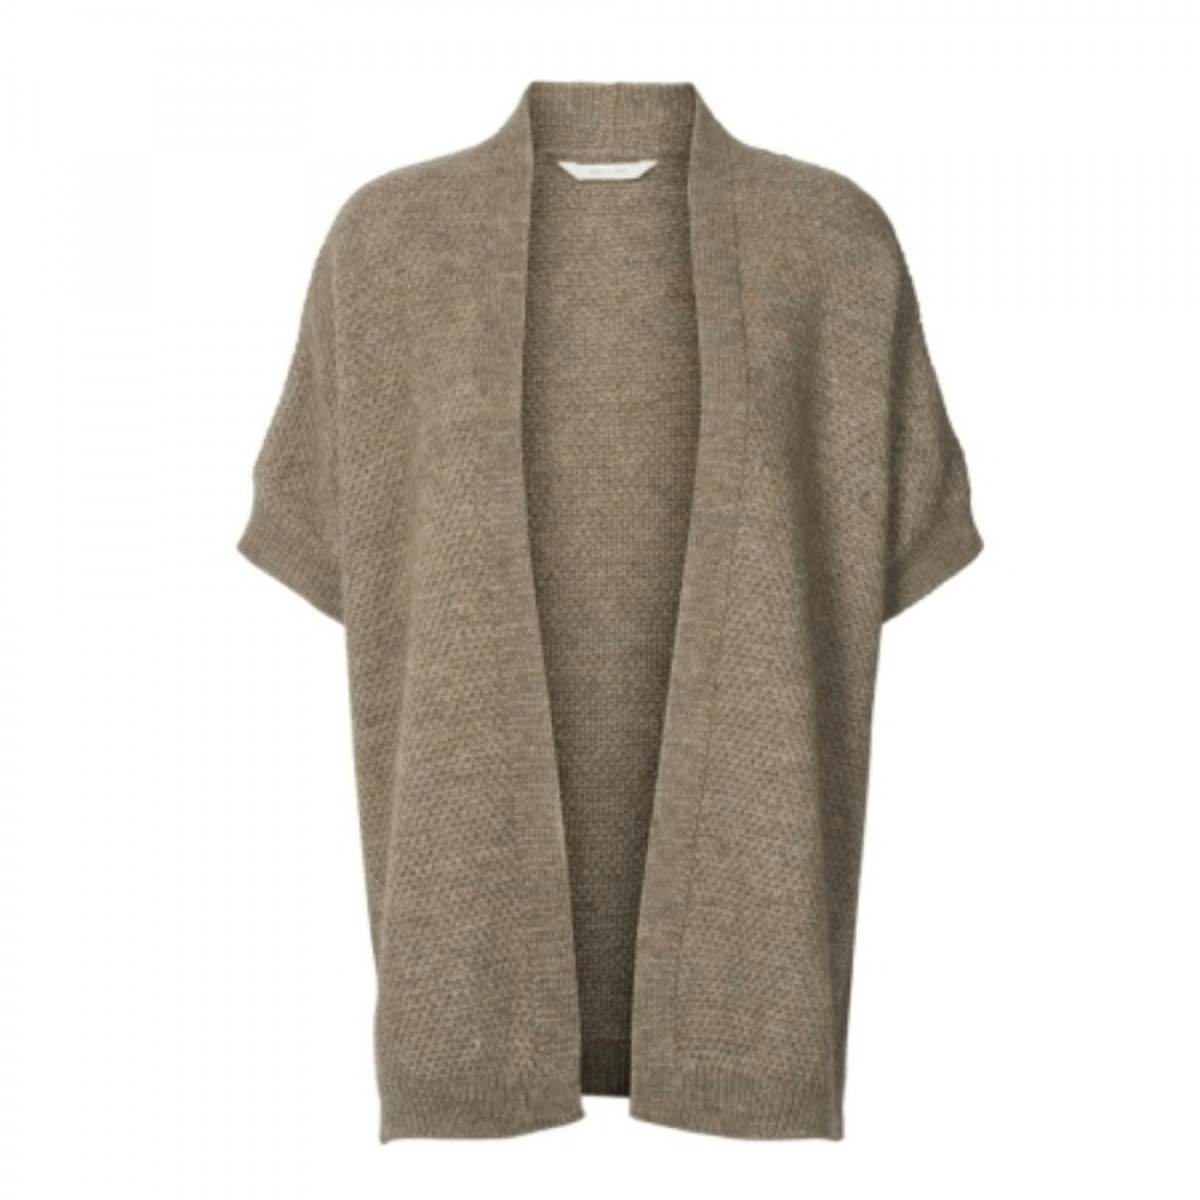 irma knit vest - calm grey 